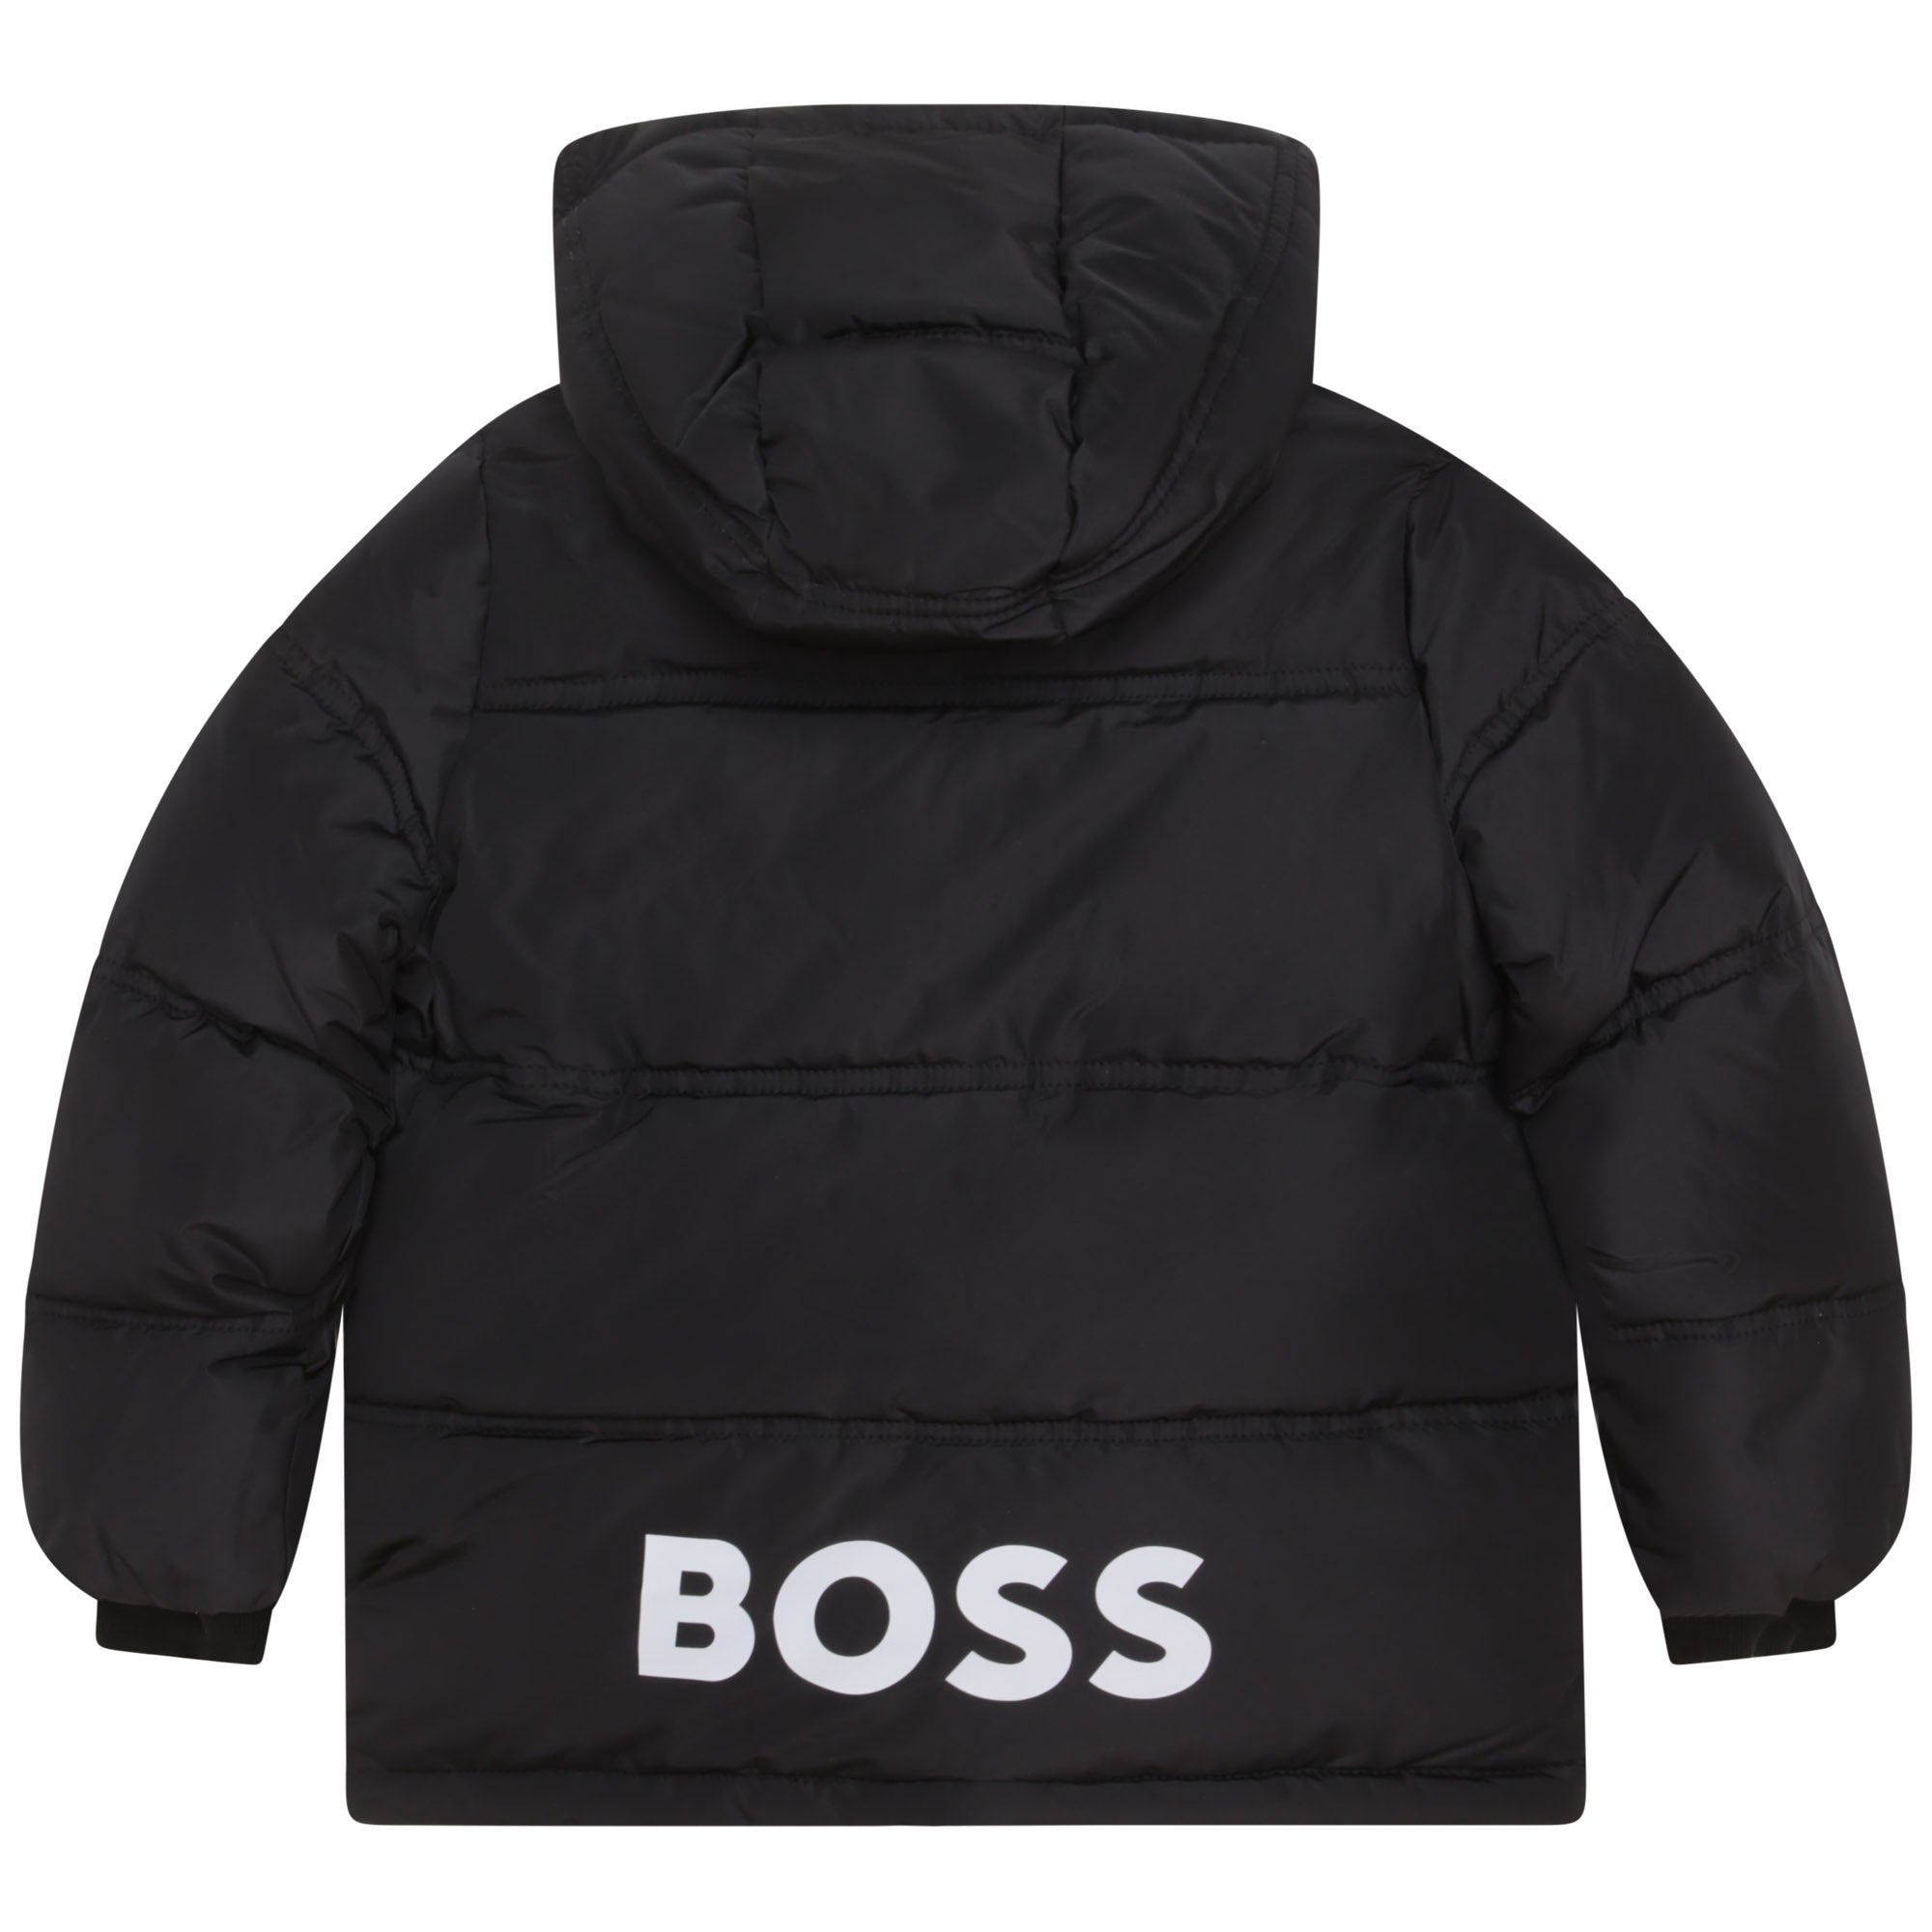 Hugo Boss Boys Puffer Jacket Black 4Y